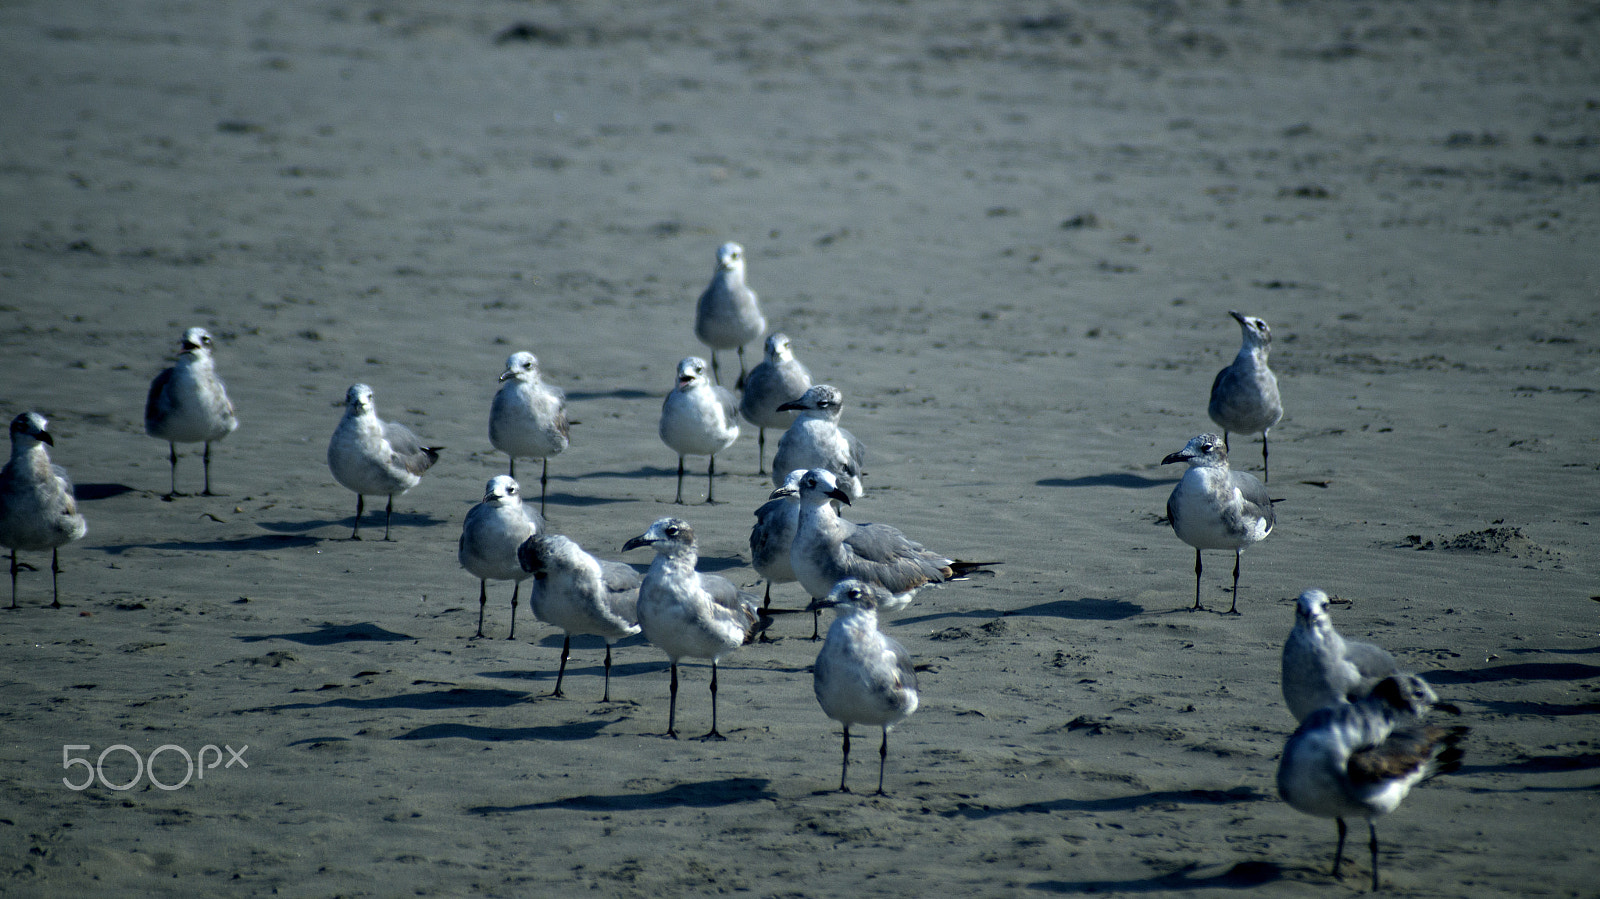 Sony SLT-A57 sample photo. Gulls on the beach photography